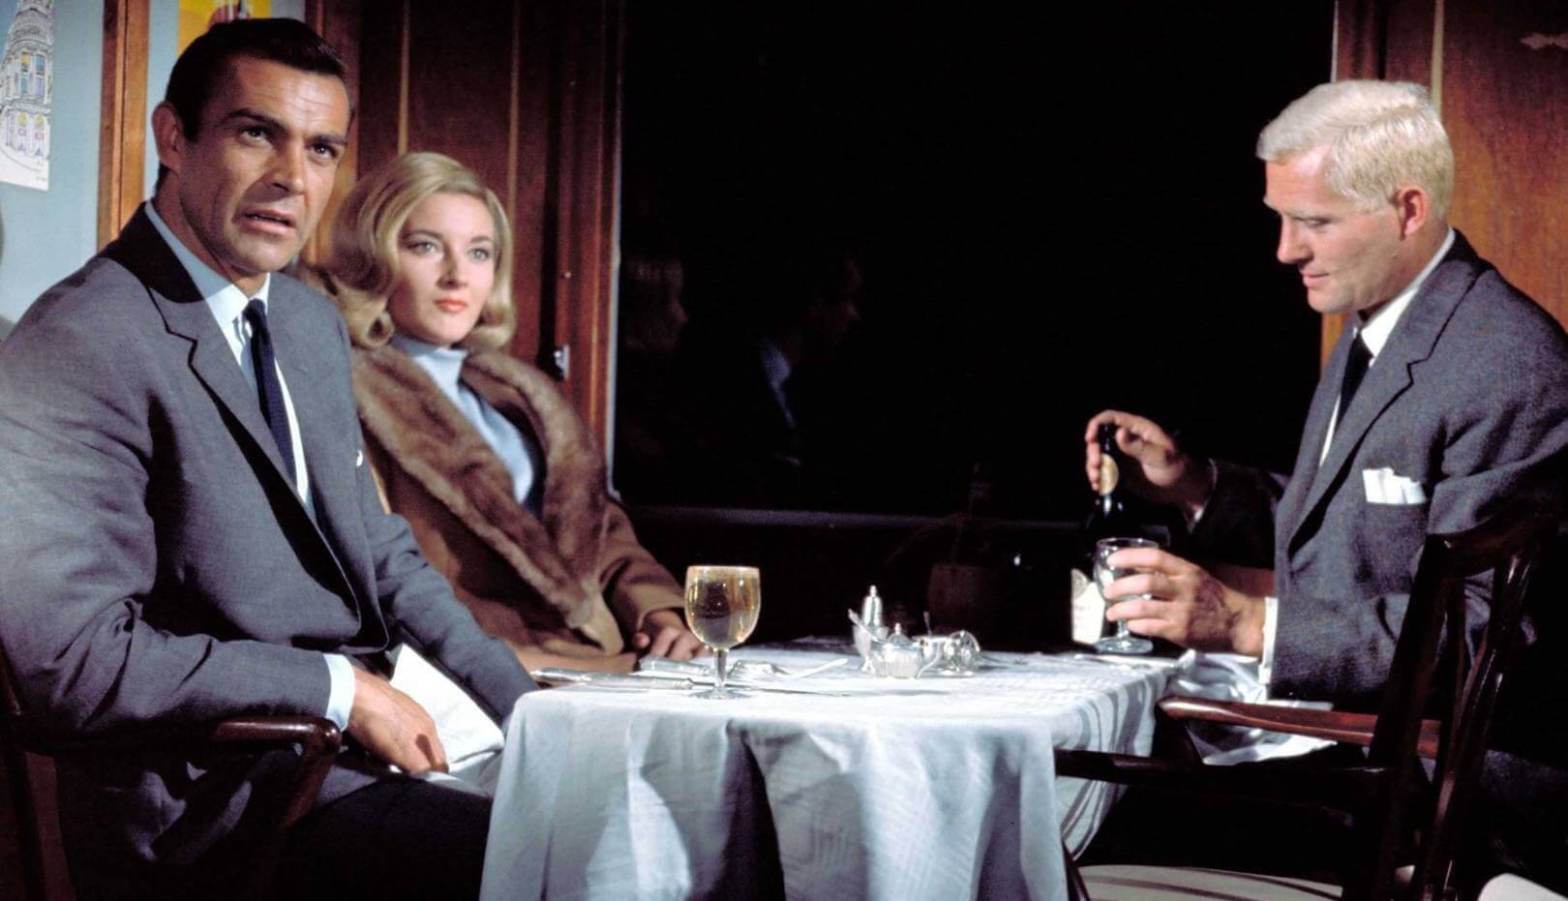 ลิสต์รวบรัดหนังชุดสายลับ เจมส์ บอนด์ 007 ครบทั้ง 25 ภาค